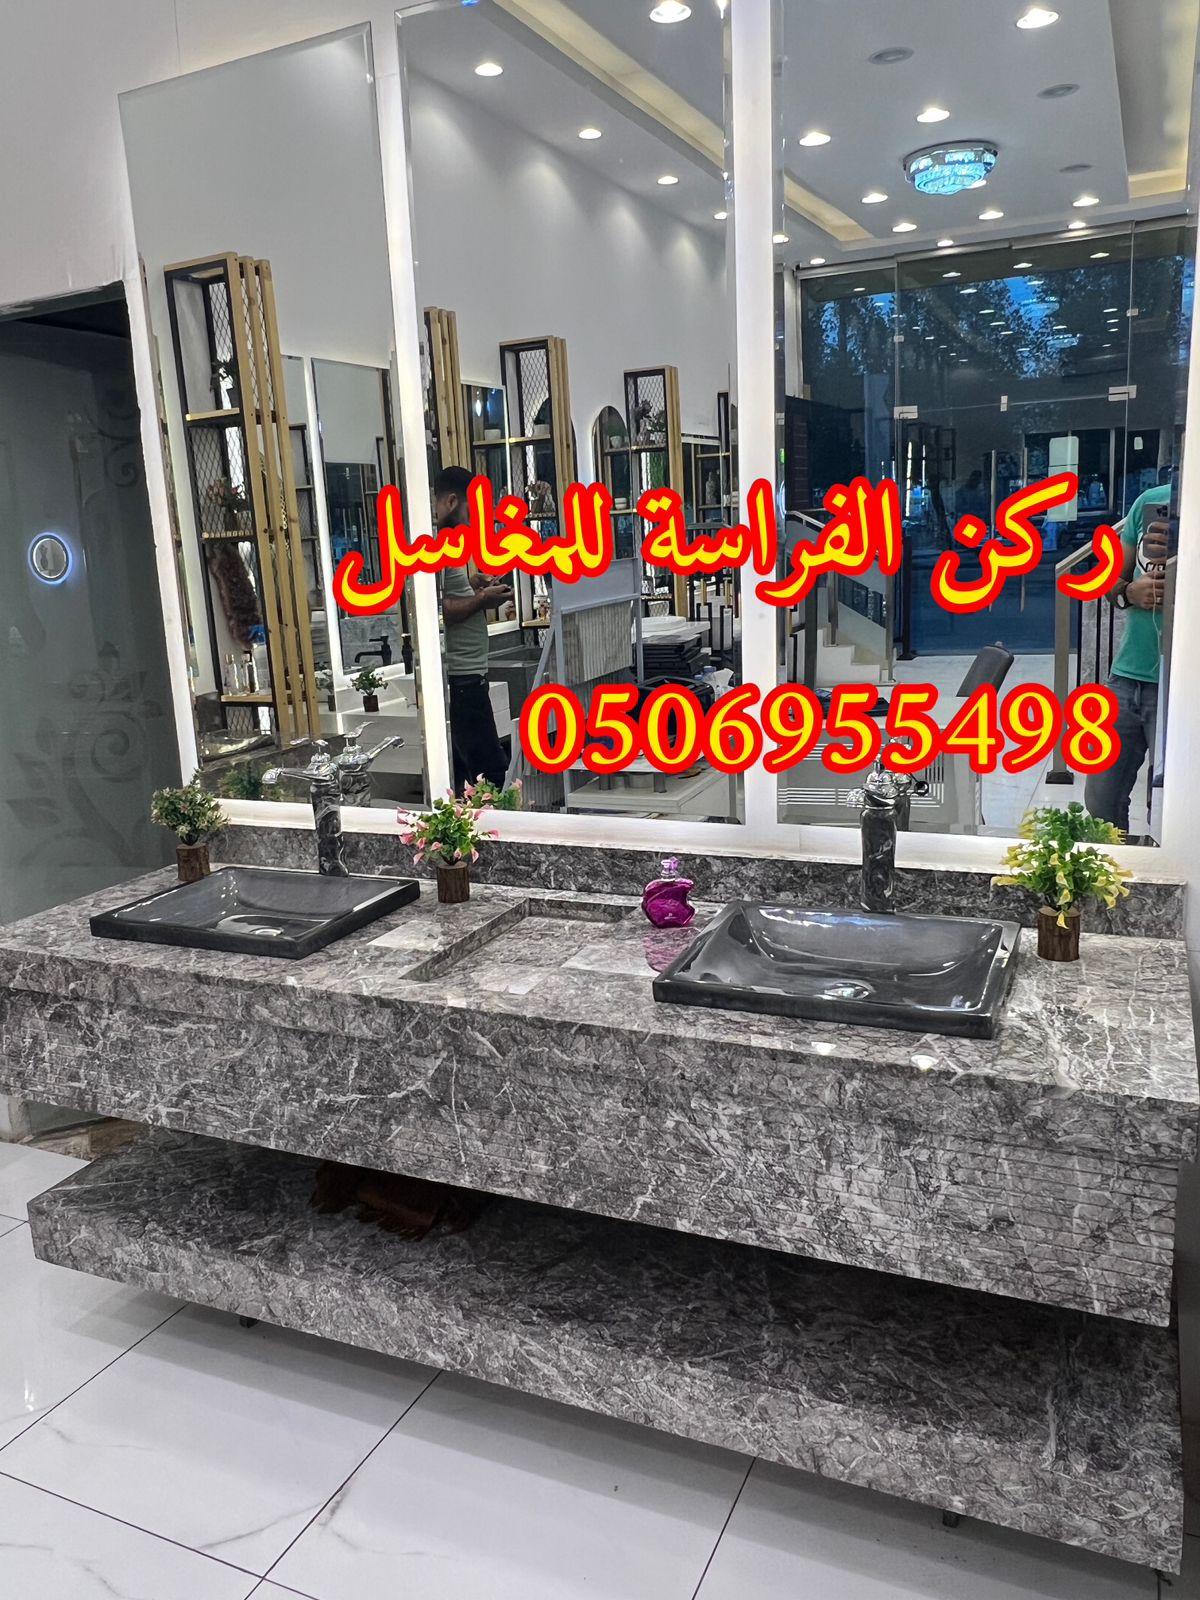 الرياض - اشكال مغاسل رخام طبيعي وصناعي في الرياض,0506955498 271194414